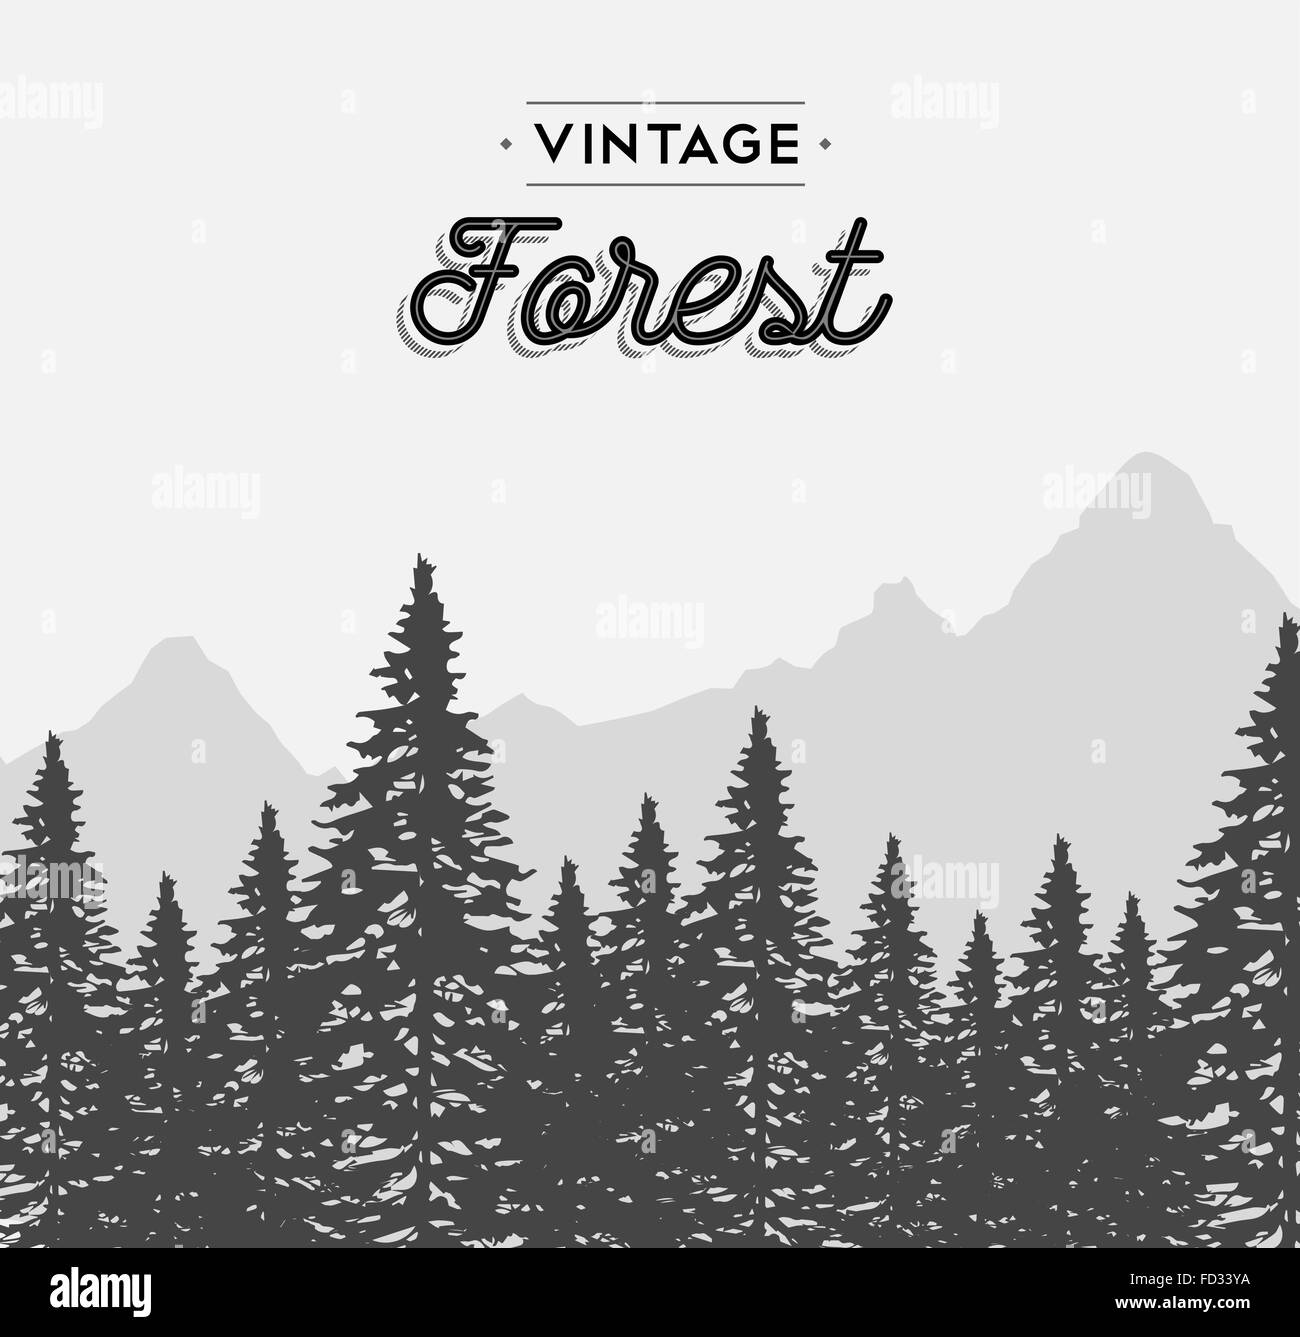 Vintage Forest Konzept Illustration mit Retro-Text-Label und Winter Baumlandschaft. EPS10 Vektor. Stock Vektor